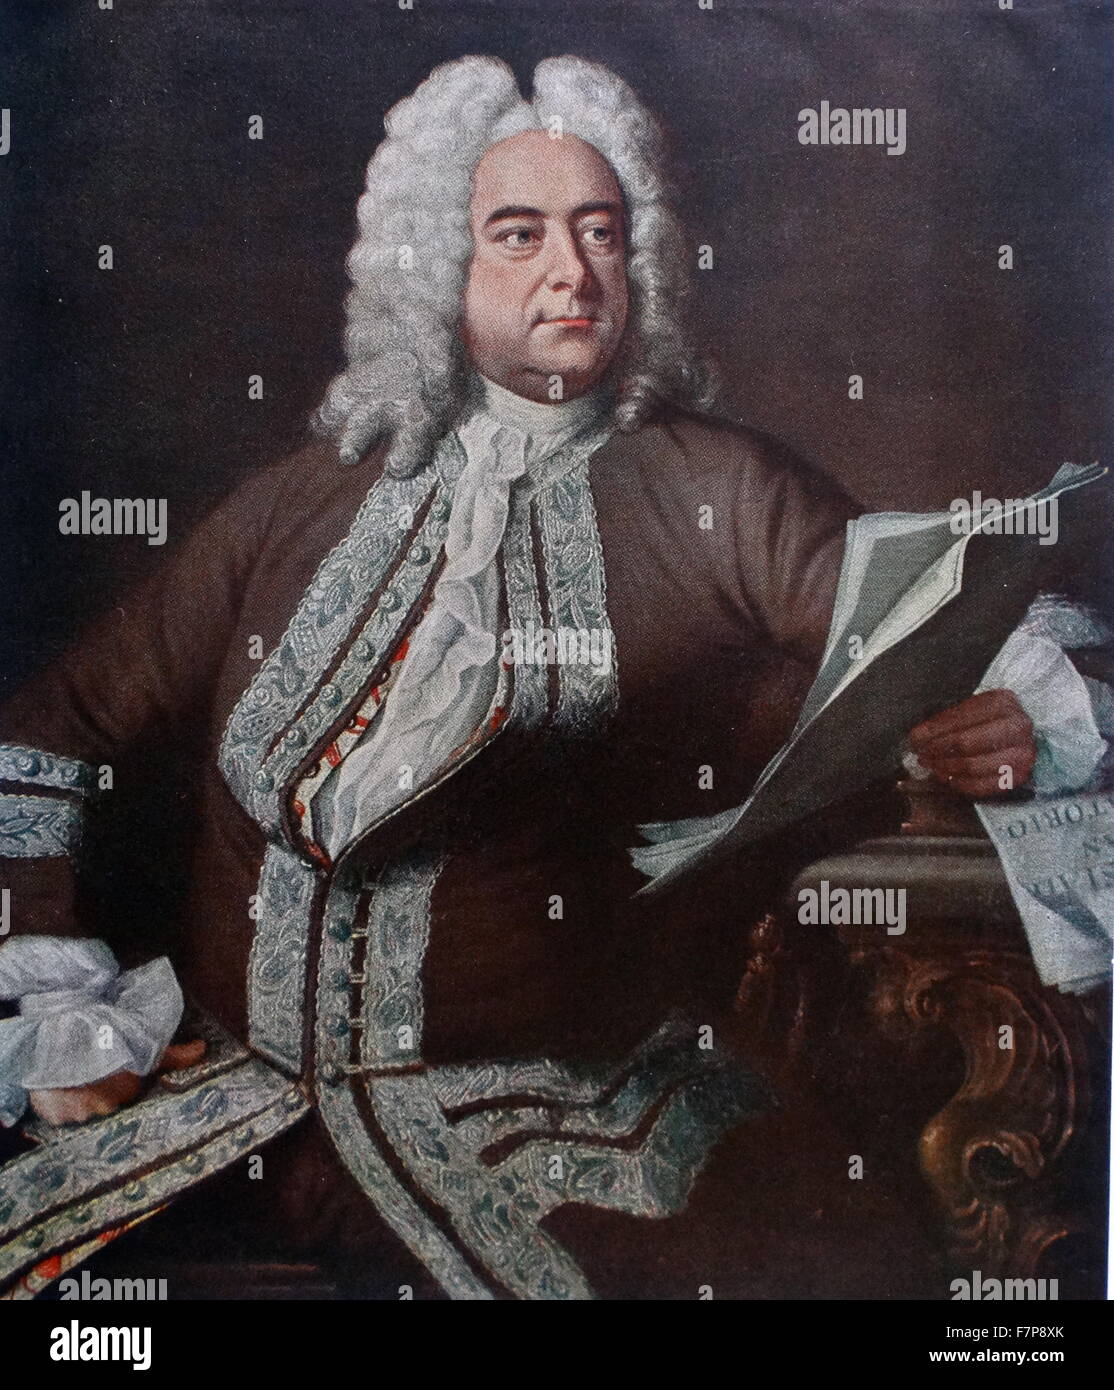 George Friedrich Haendel 1685-1759 compositeur espagnol-anglais Banque D'Images